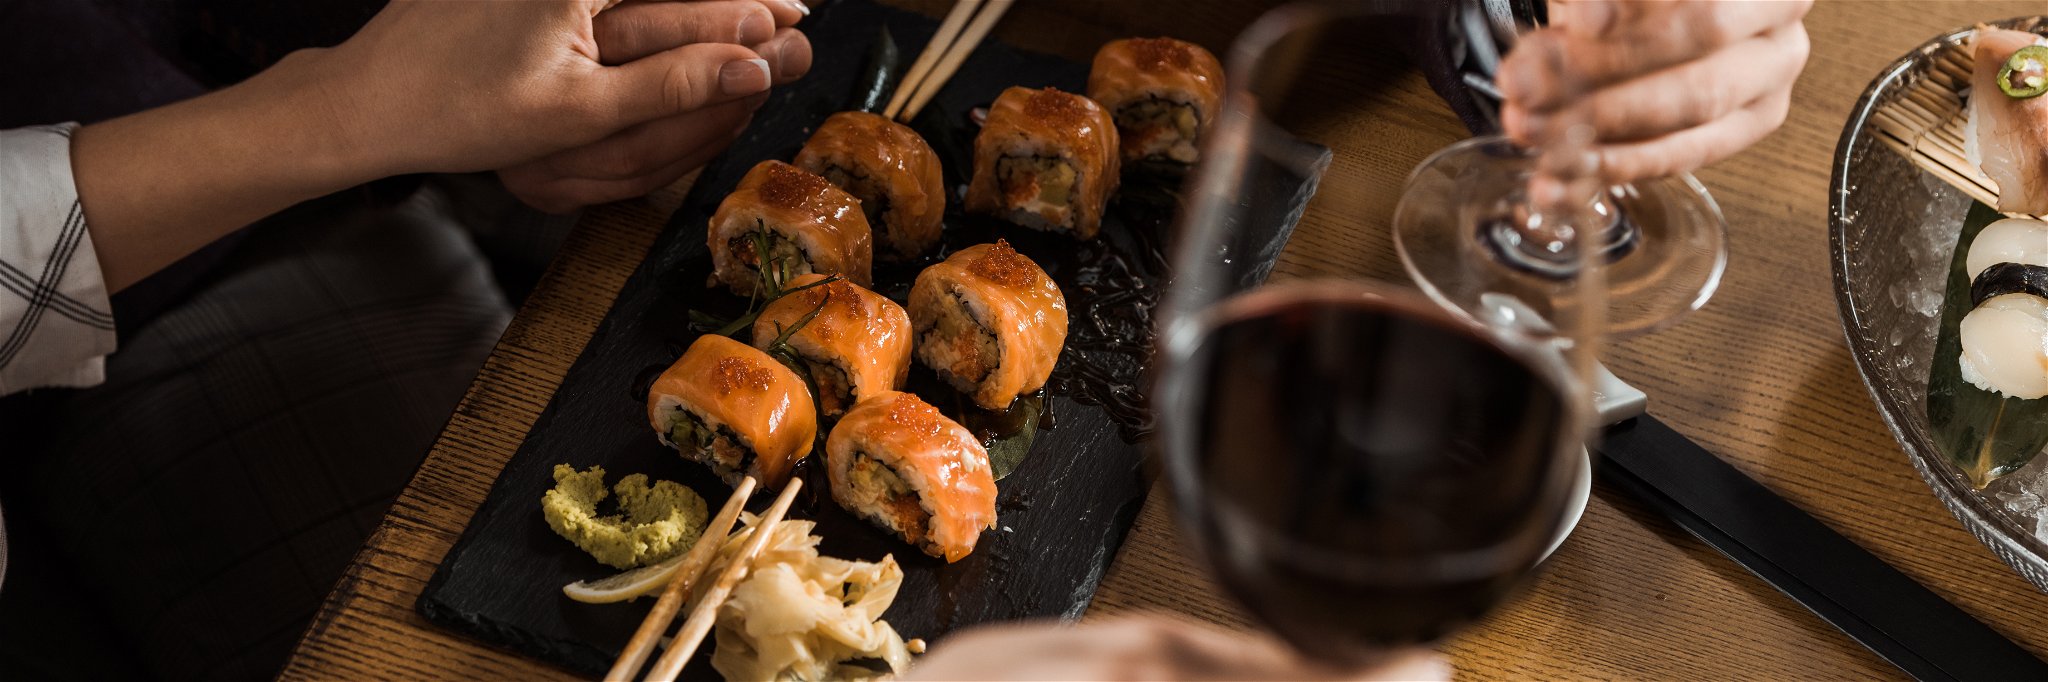 Egal ob Nigiri oder Maki: Schweizer Weine sind eine tolle Wahl zu Sushi.